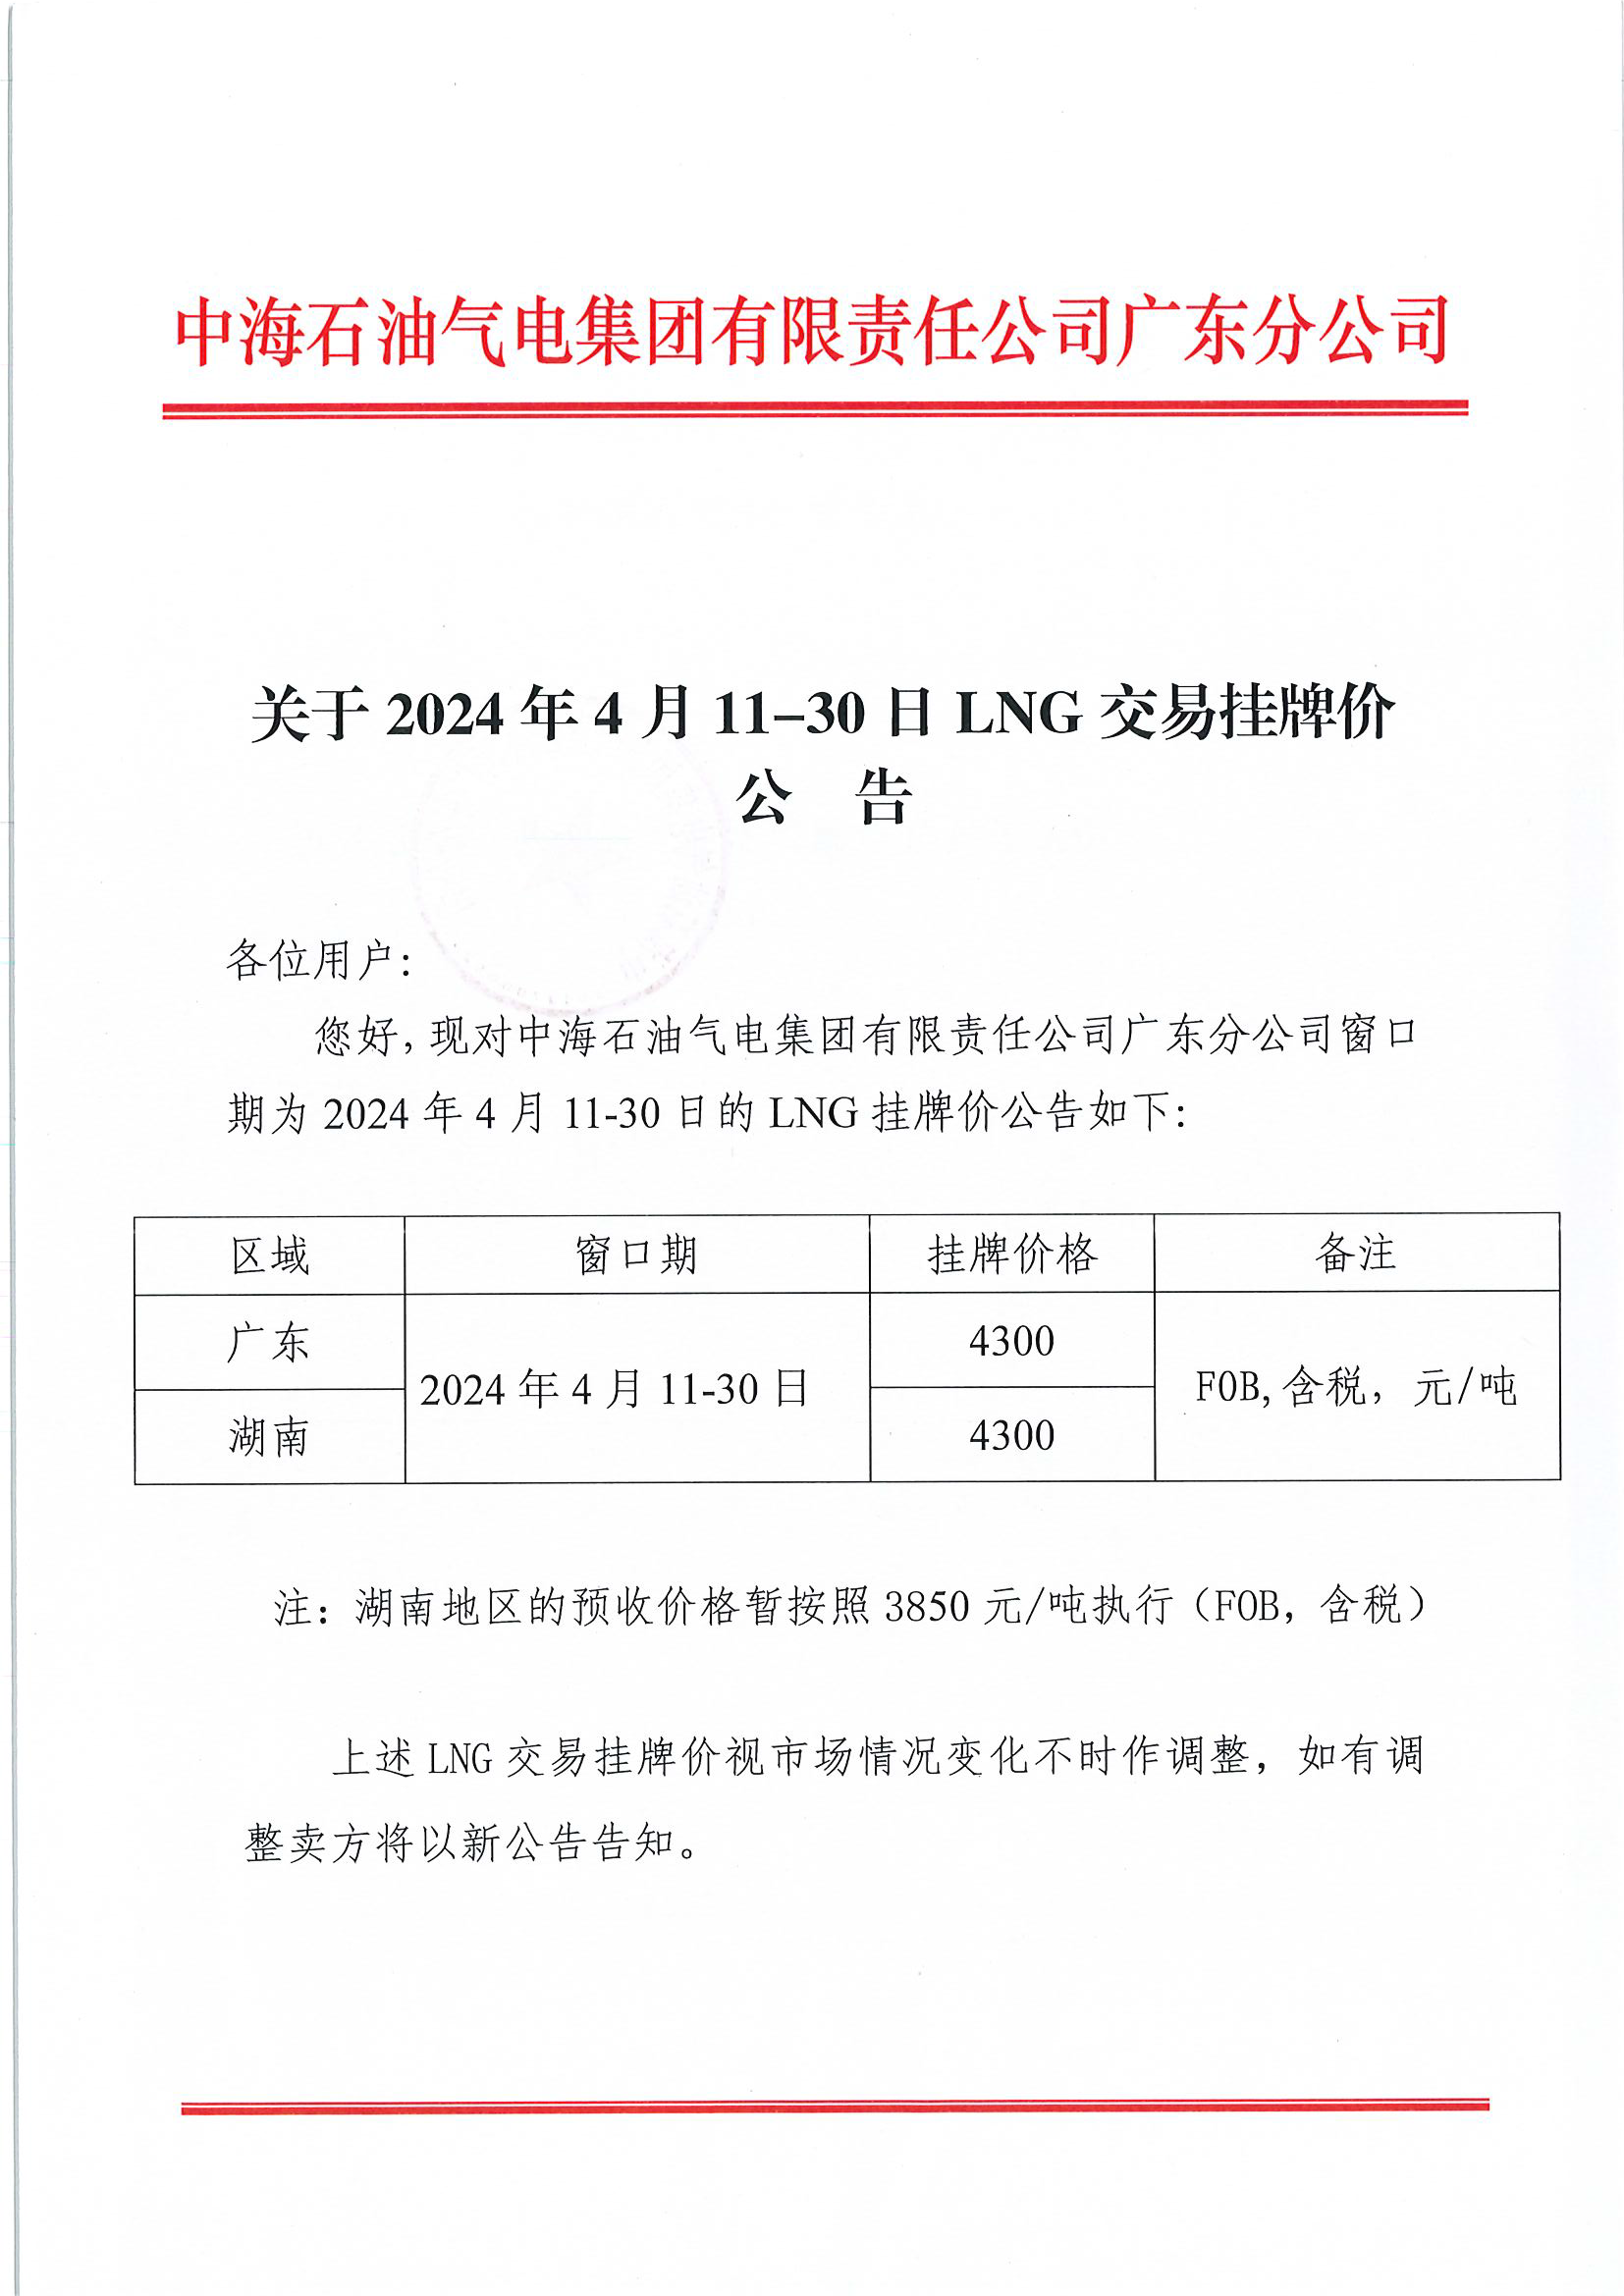 中海石油气电集团有限责任公司广东分公司关于2024年4月11-30日LNG交易挂牌价公告（广东、湖南地区）_页面_1.png